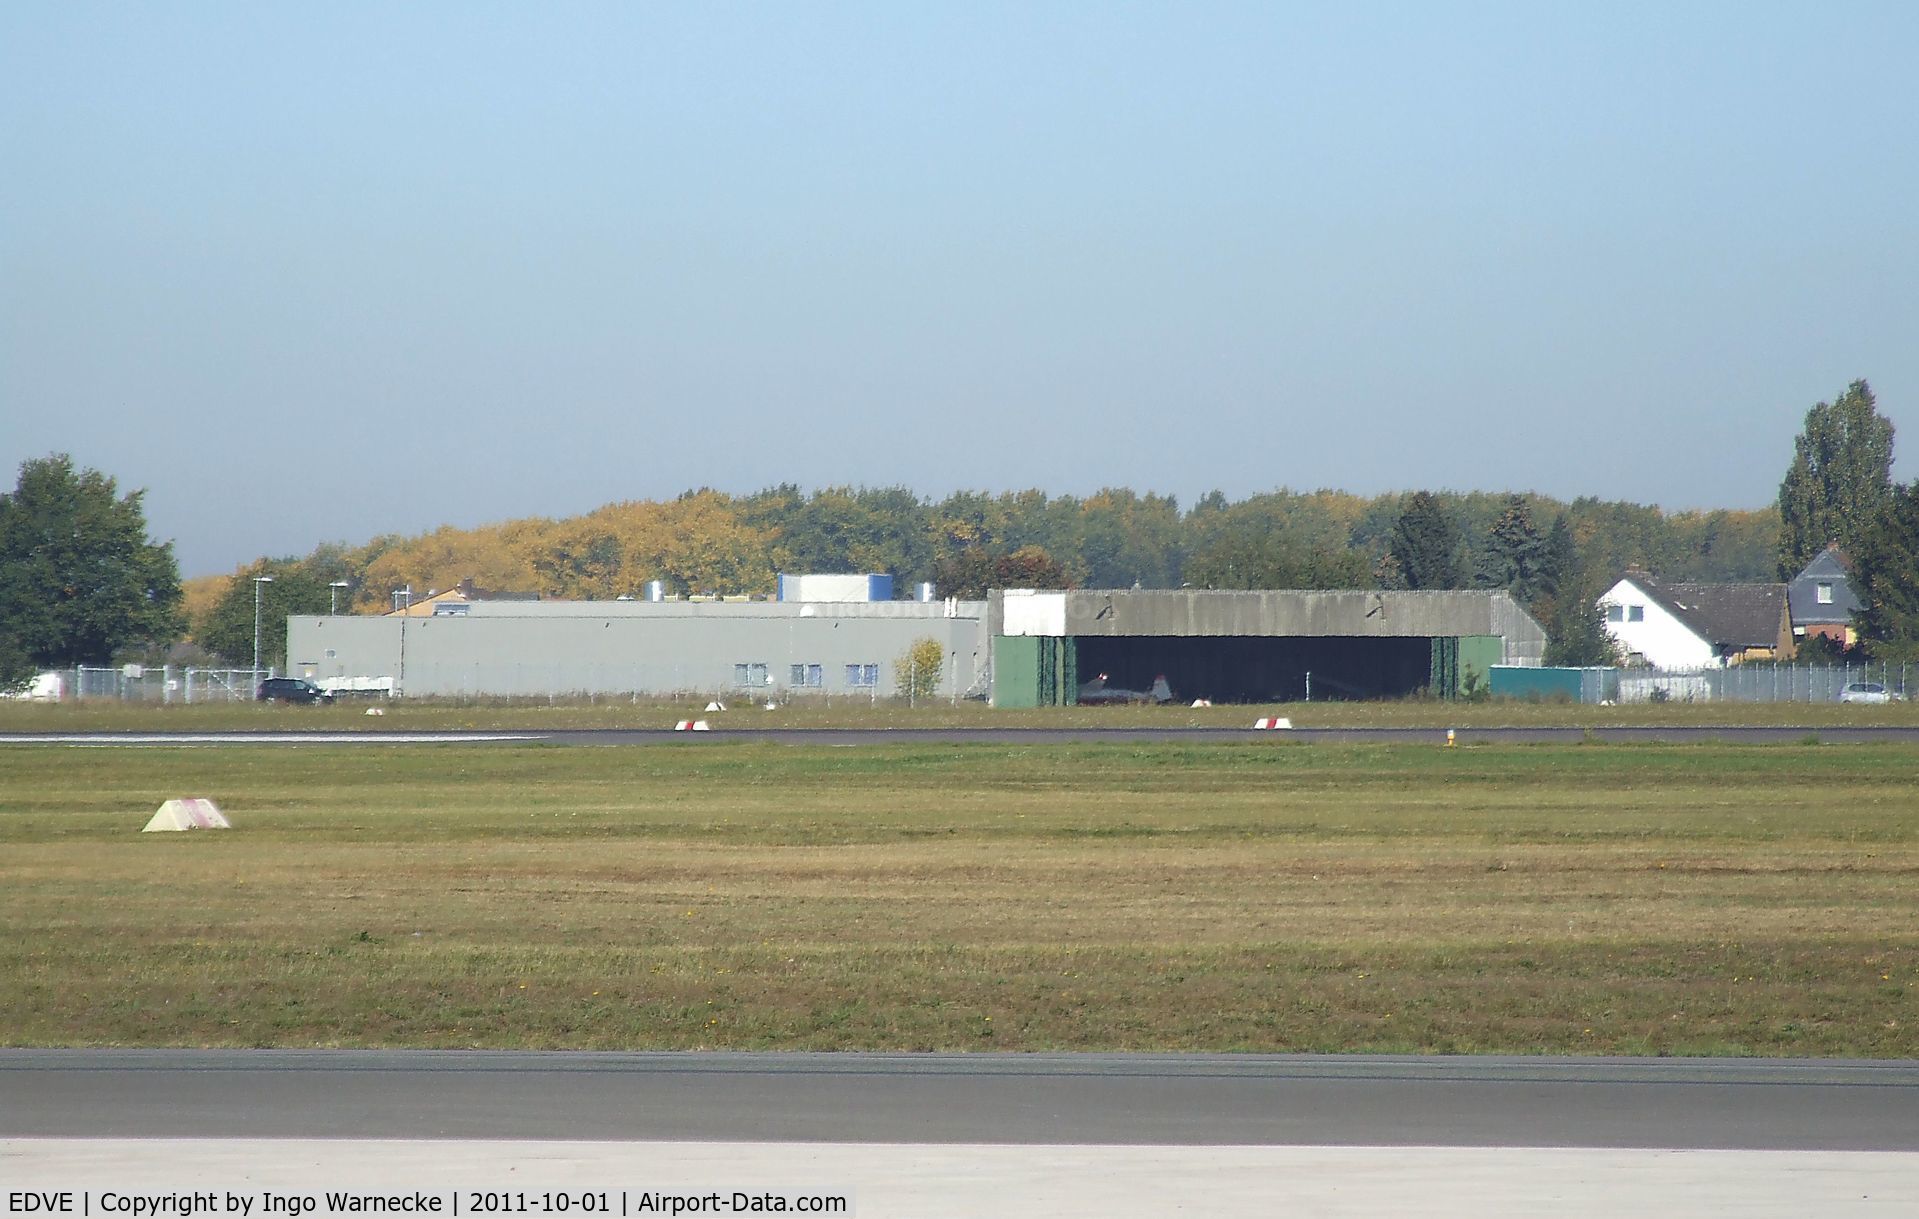 Braunschweig-Wolfsburg Regional Airport, Braunschweig, Lower Saxony Germany (EDVE) - hangar across the field in the northern part of Braunschweig-Waggum airport